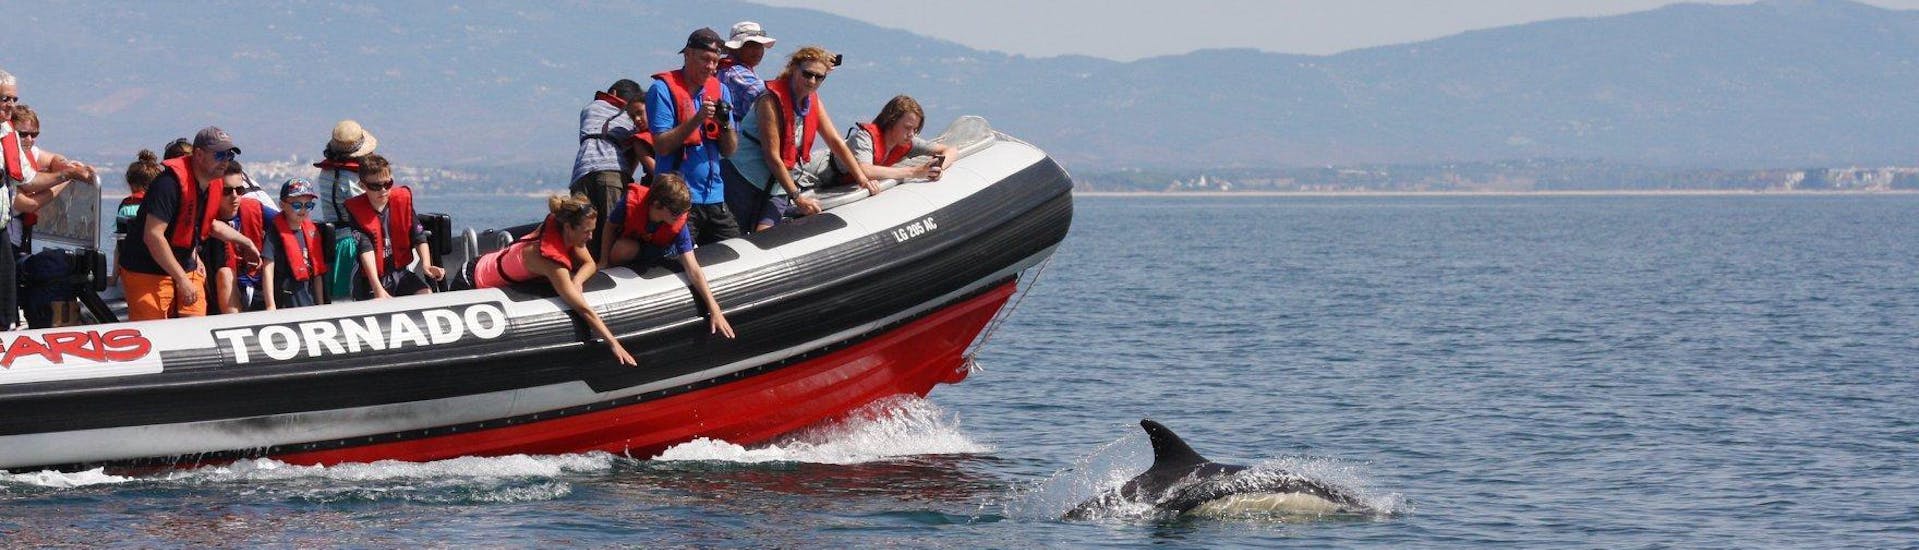 Bei der Delfinbeobachtung in Portimao mit Seafaris Algarve bewundern die Besucher die freundlichen Tiere vom Boot aus.